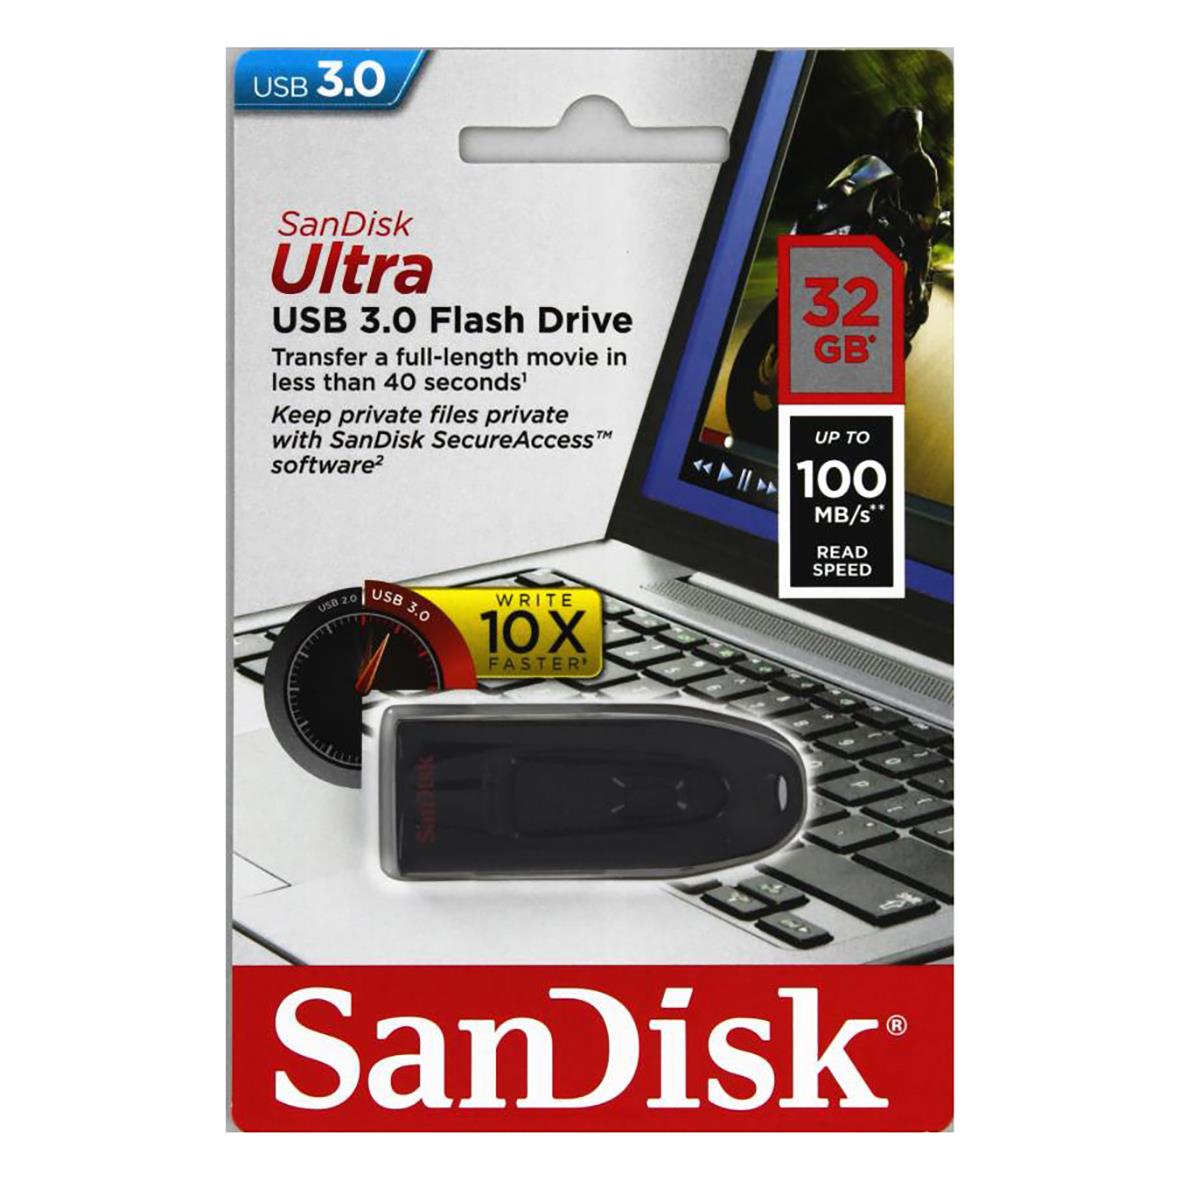 USB-minne Sandisk Ultra 3.0 100MB/s 32GB 36110109_1